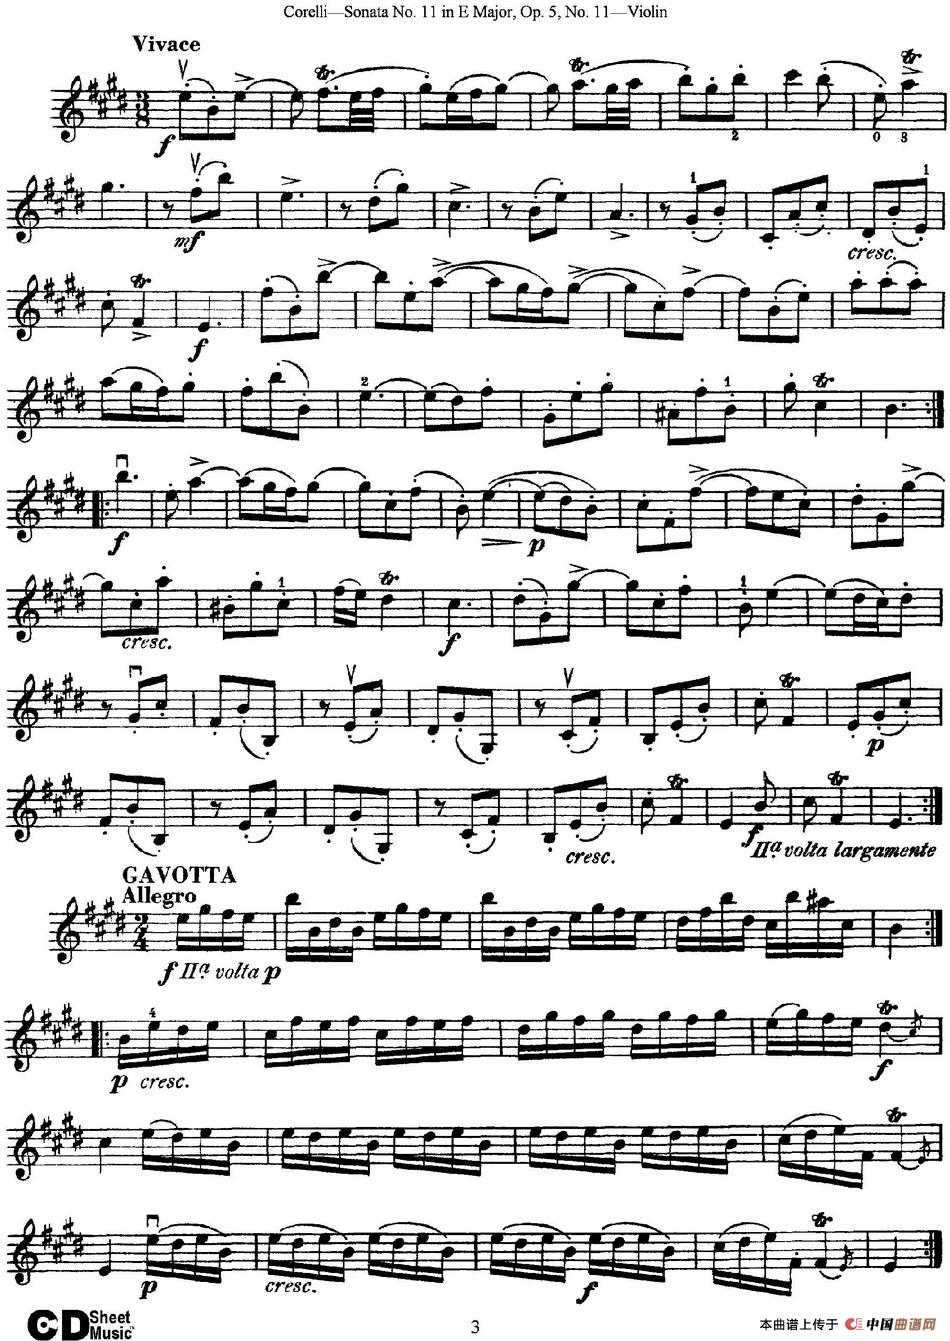 Sonata No.11 in E Major Op.5 No.11